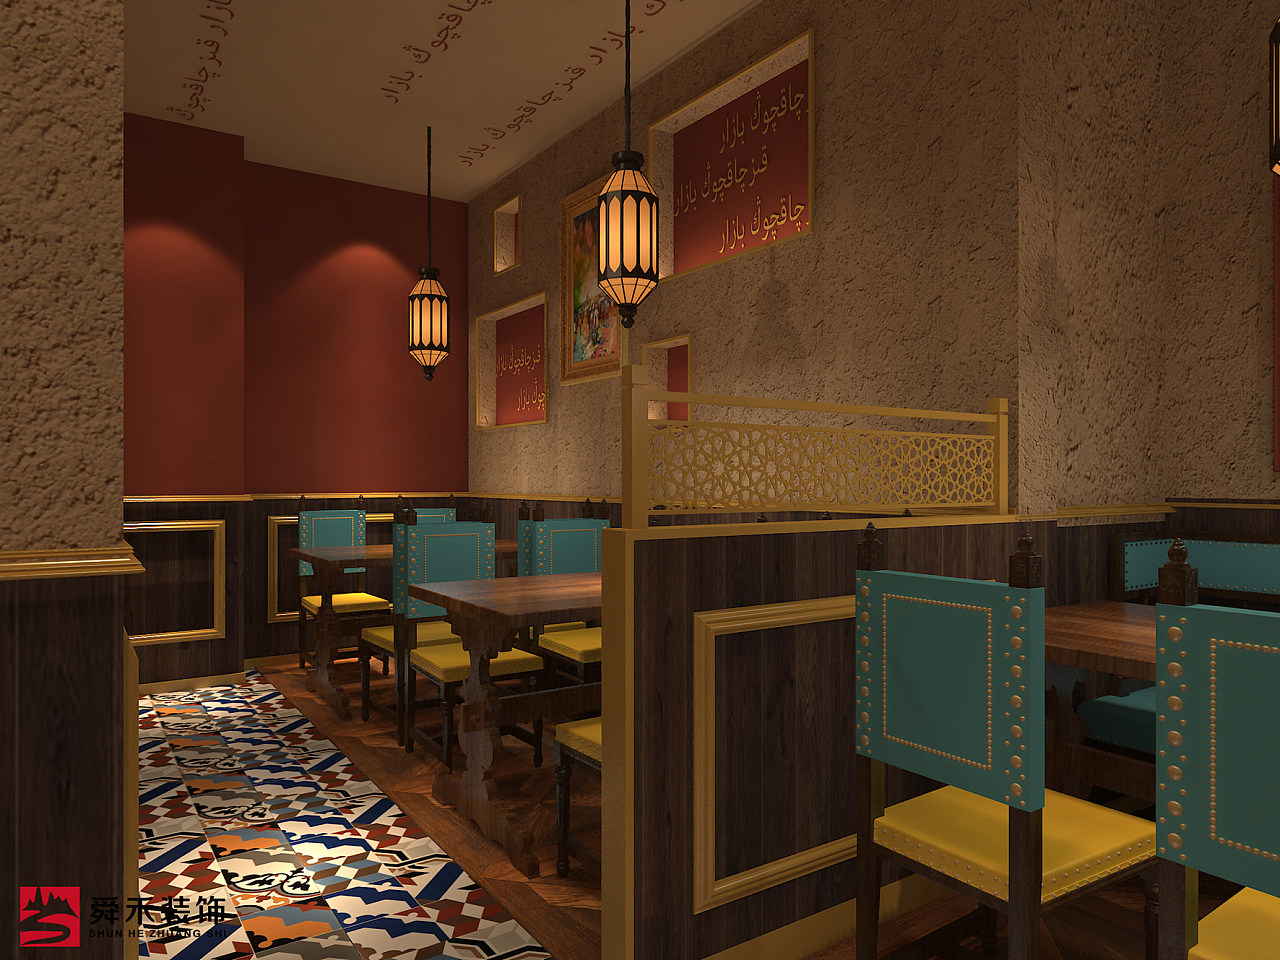 新疆餐厅西域餐厅设计cad施工图-免费3dmax模型库-欧模网